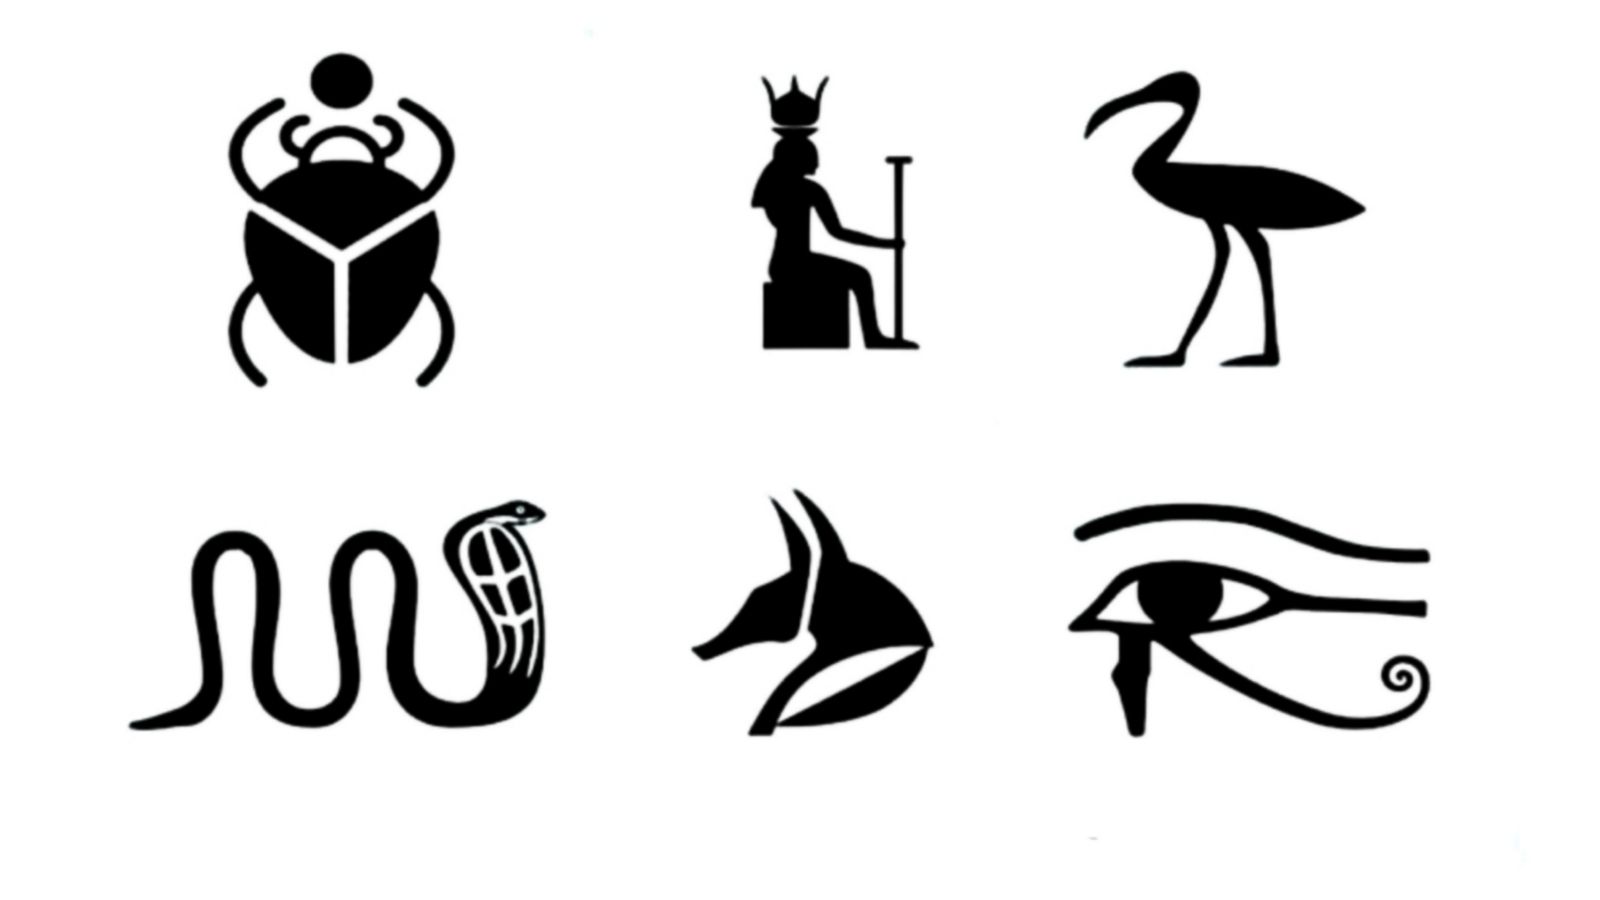 Biểu tượng Ai Cập là những công trình kiến trúc kỳ vĩ và đồ sộ, trang trí bằng hình ảnh các vị thần và những đoạn chữ khắc trên những khối đá khổng lồ. Hãy đến thăm những biểu tượng đình đám như Kim tự tháp Giza hoặc đền Luxor để tìm hiểu về nền văn hóa lâu đời của Ai Cập.